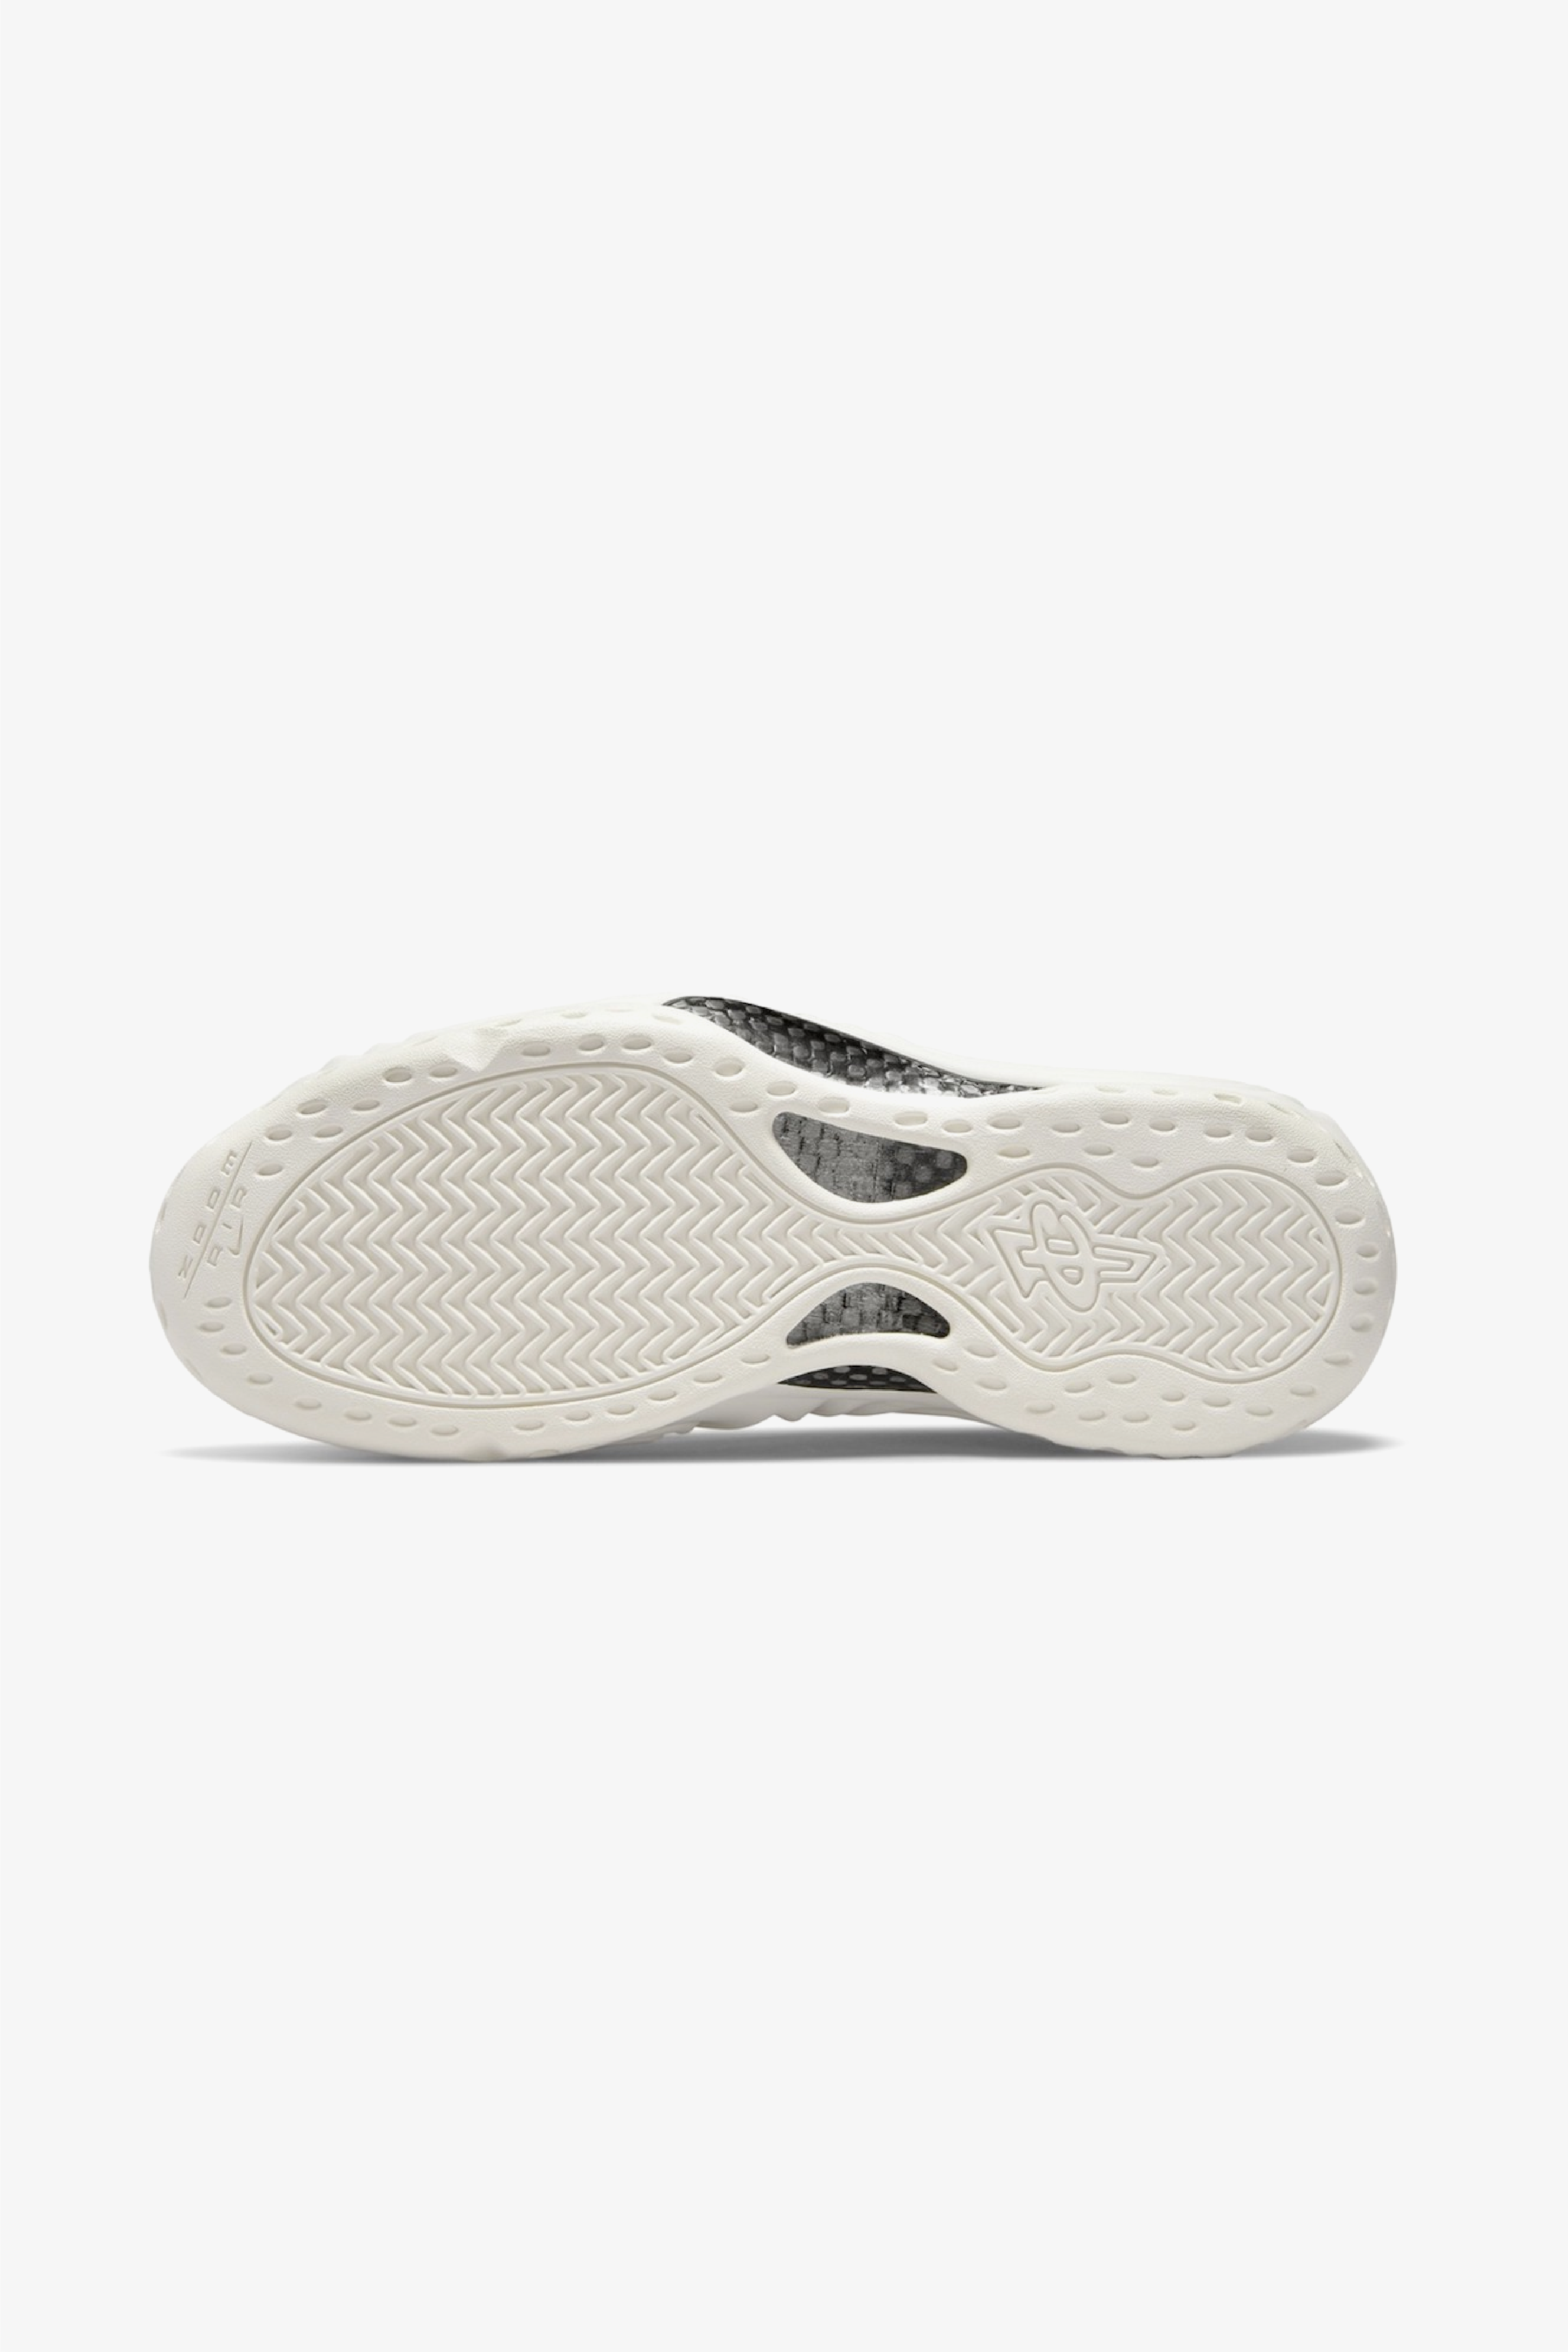 Selectshop FRAME - COMME DES GARÇONS HOMME PLUS Comme des Garçons x Nike Air Foamposite One Footwear Dubai